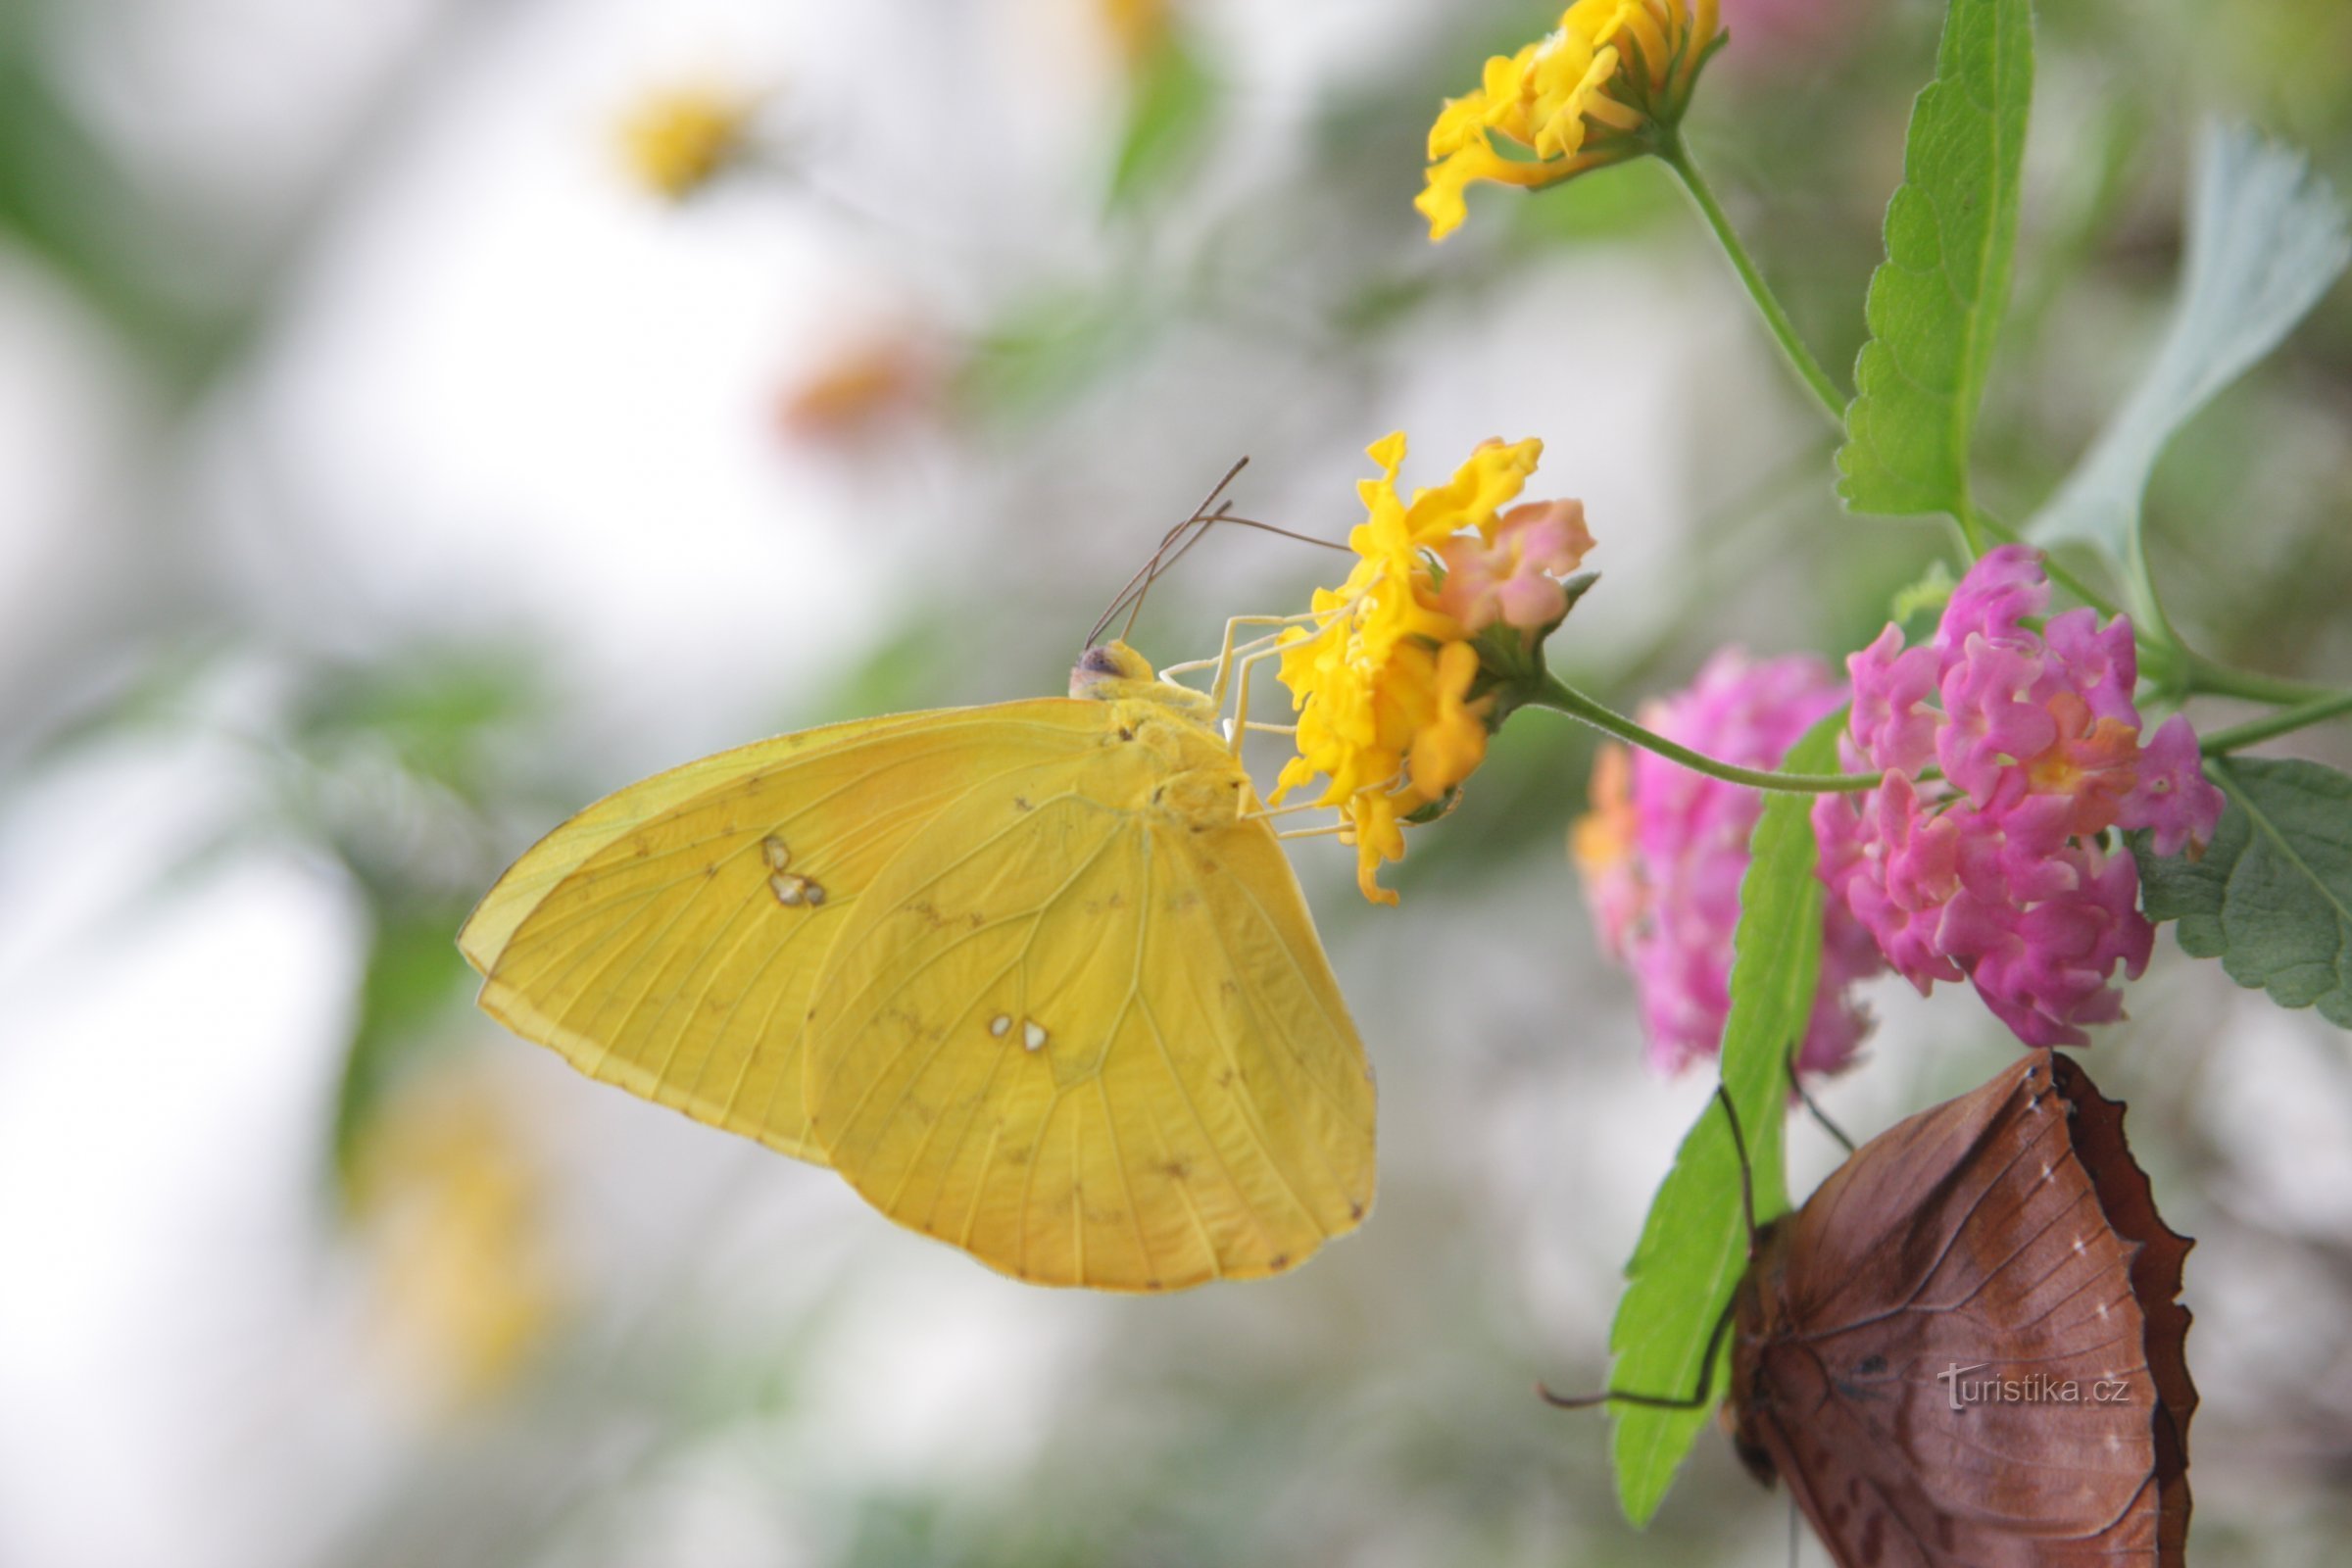 A misteriosa vida das borboletas será apresentada por uma exposição na estufa Fata Morgana